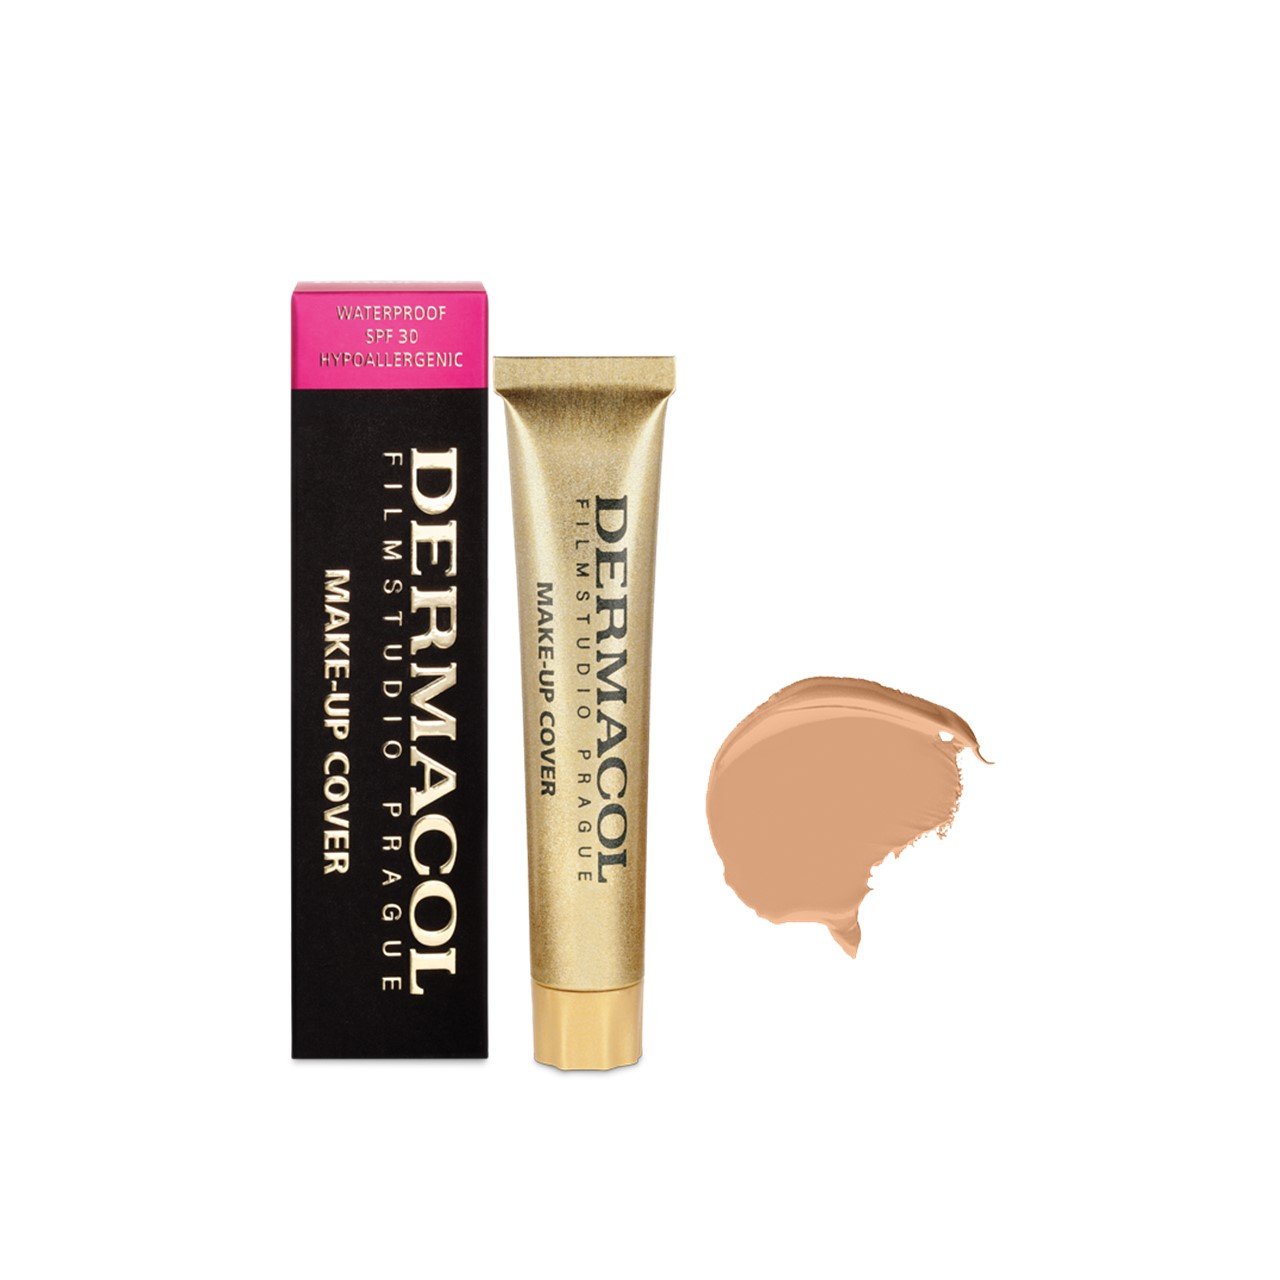 Dermacol Make-Up Cover Foundation SPF30 218 30g (1.06oz)